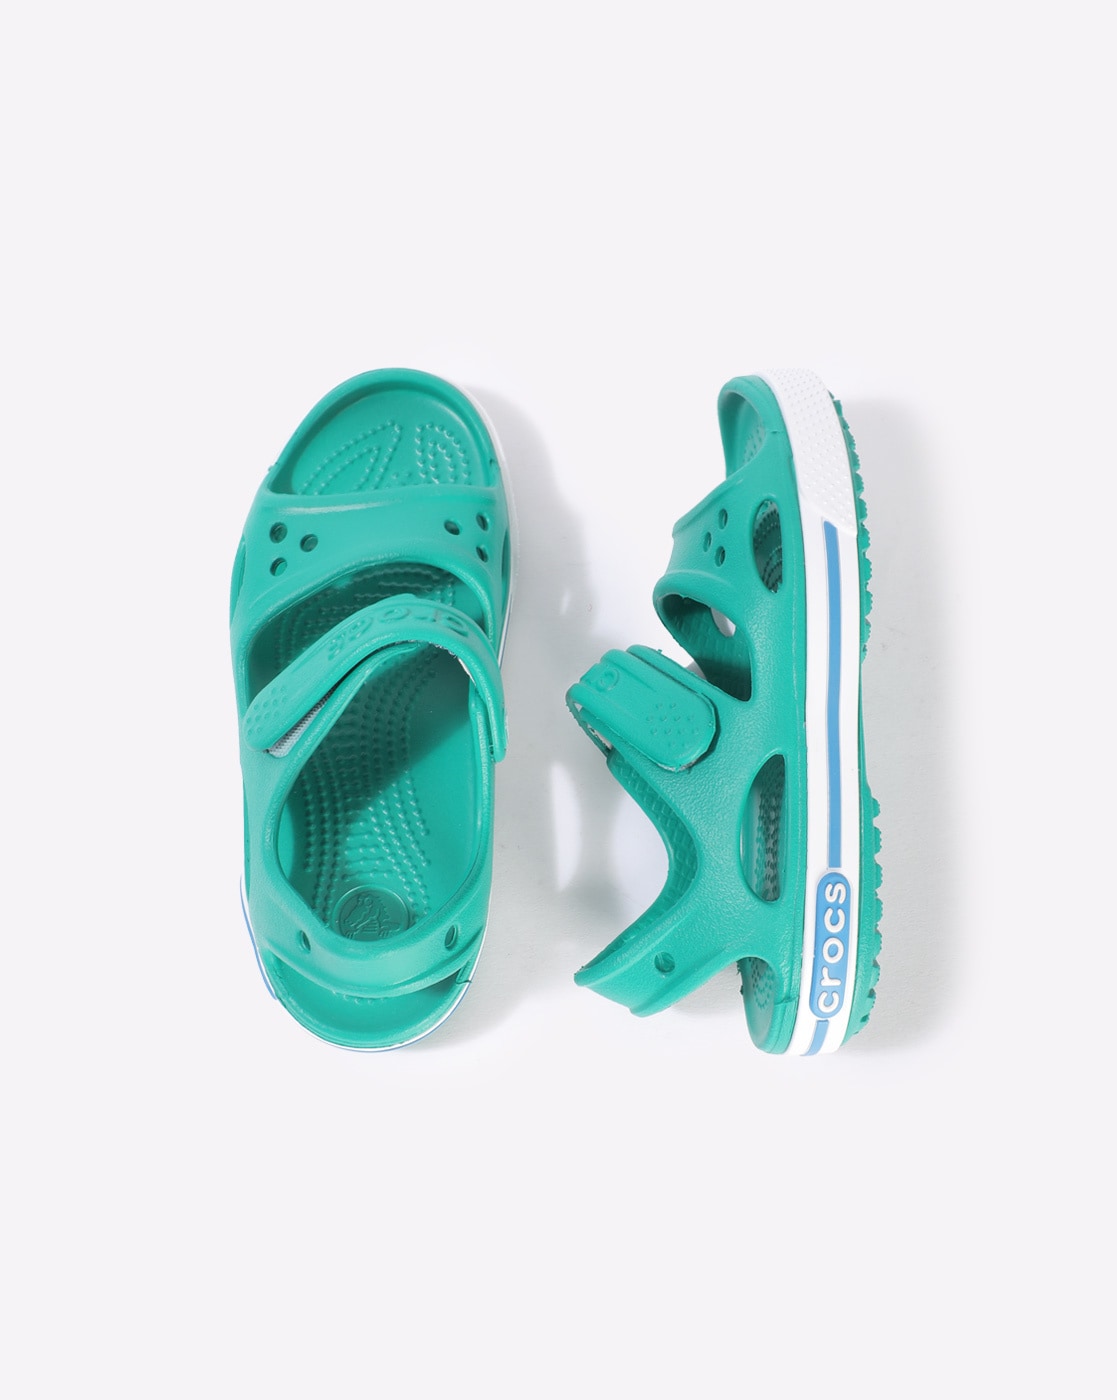 crocs crocband 2 sandal